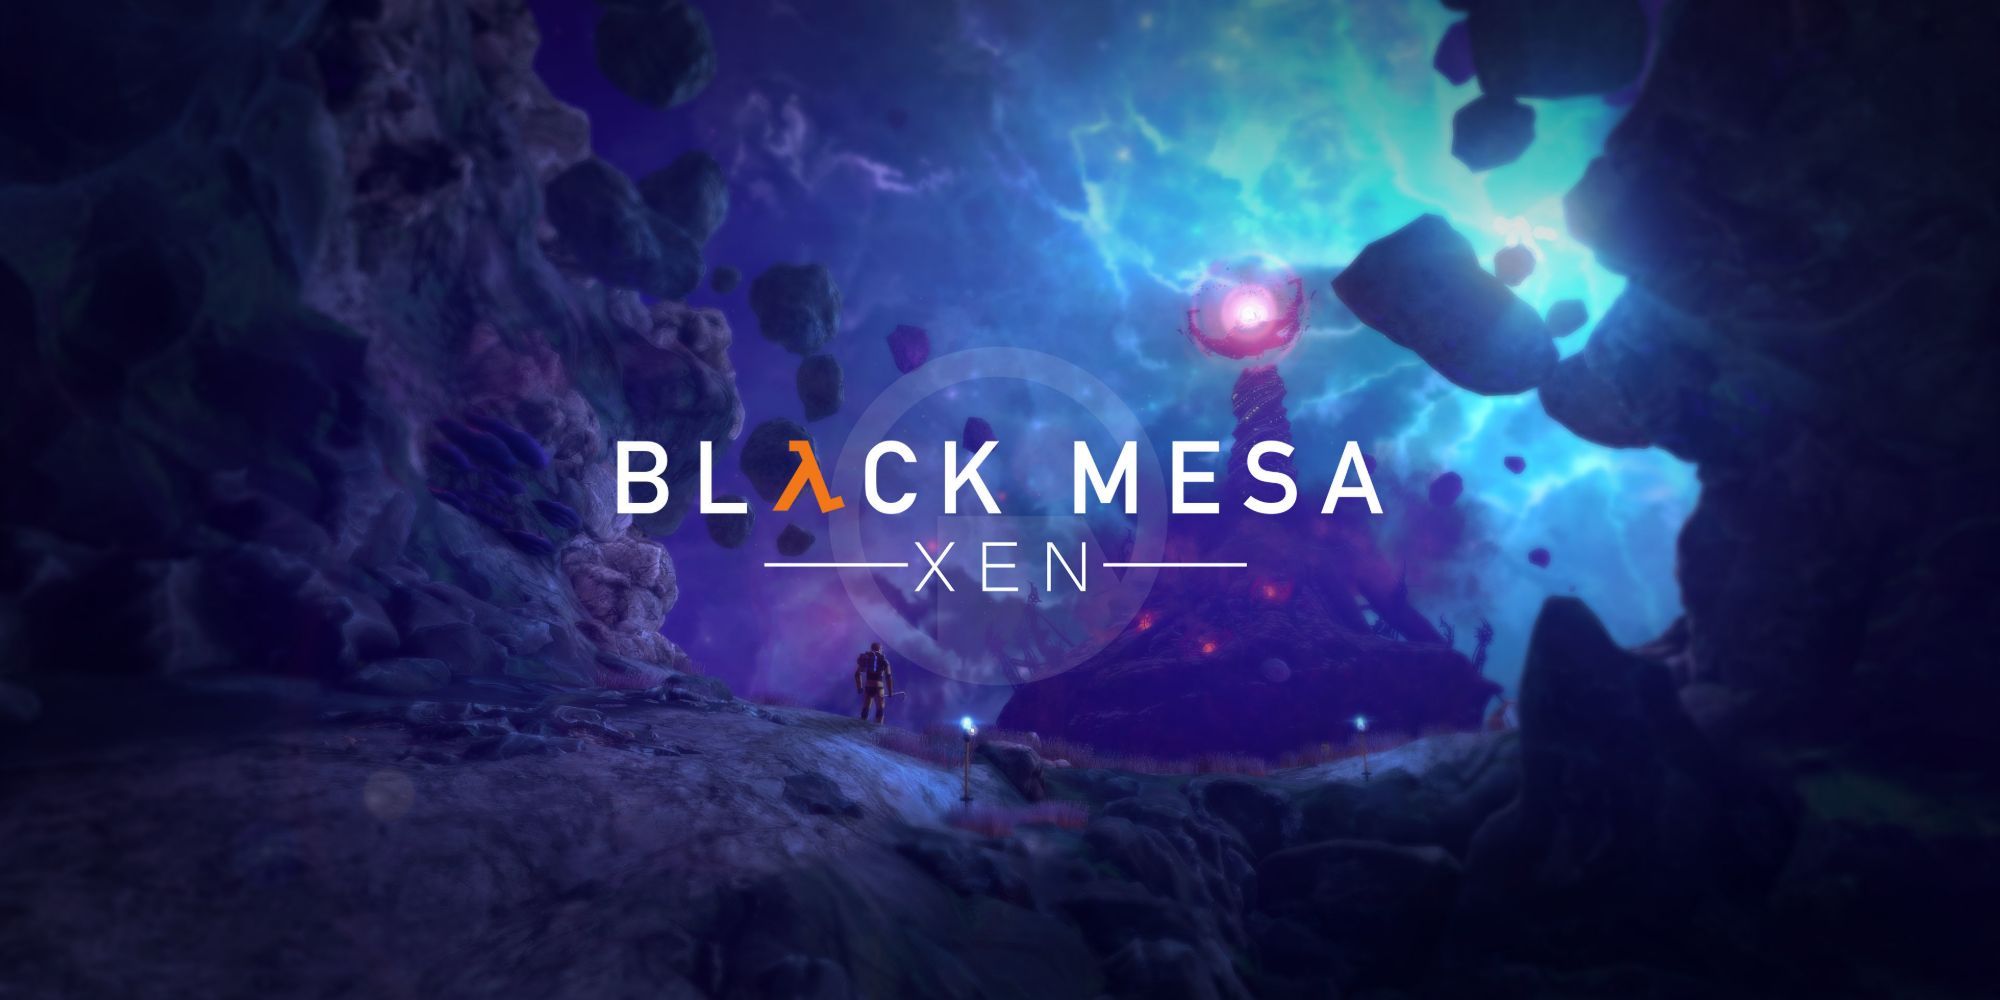 Black Mesa title and alien landscape